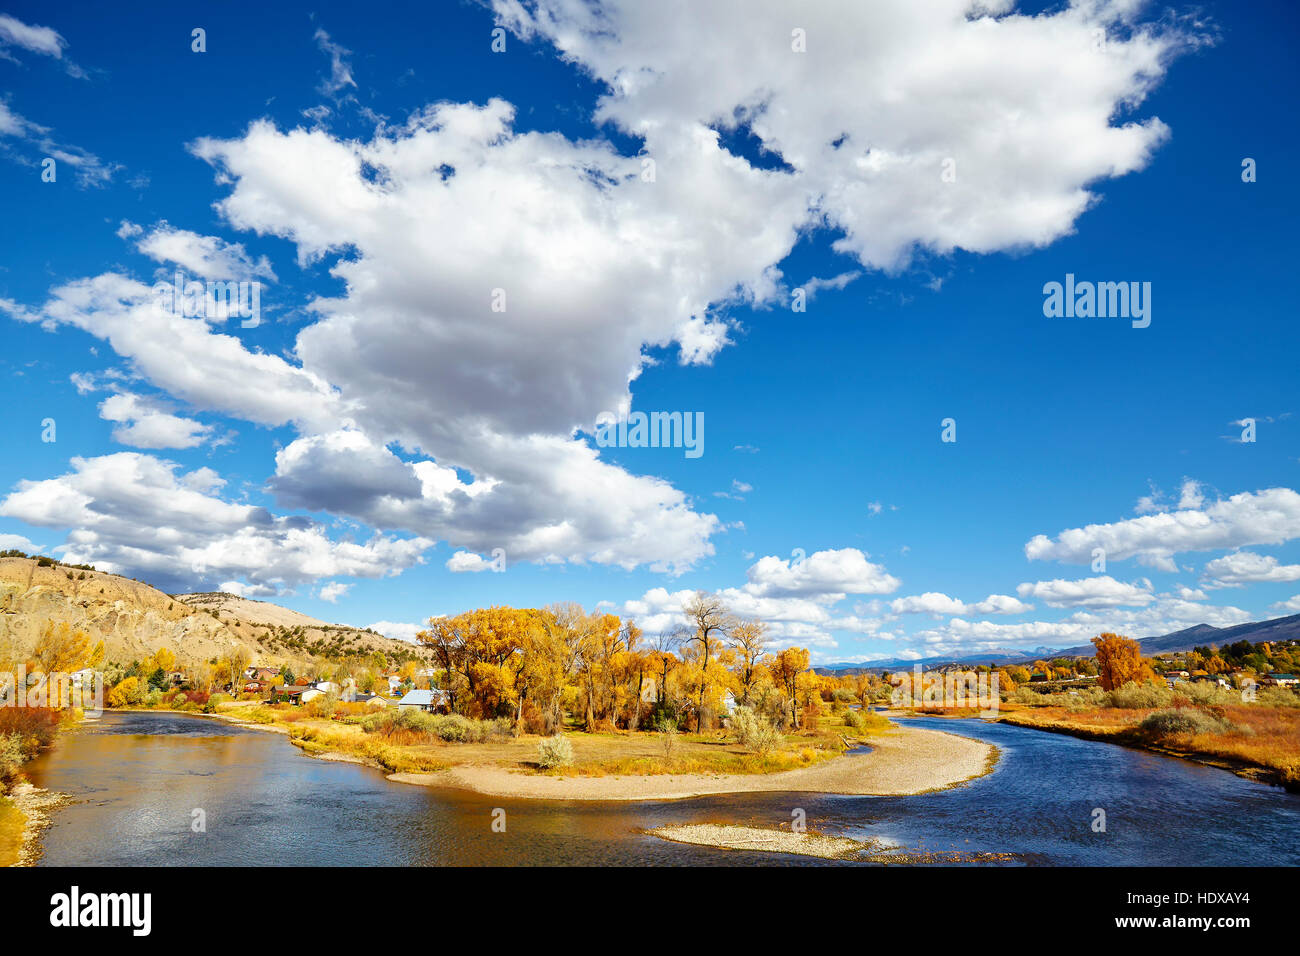 Beautiful autumn landscape with Eagle River, Colorado, USA. Stock Photo